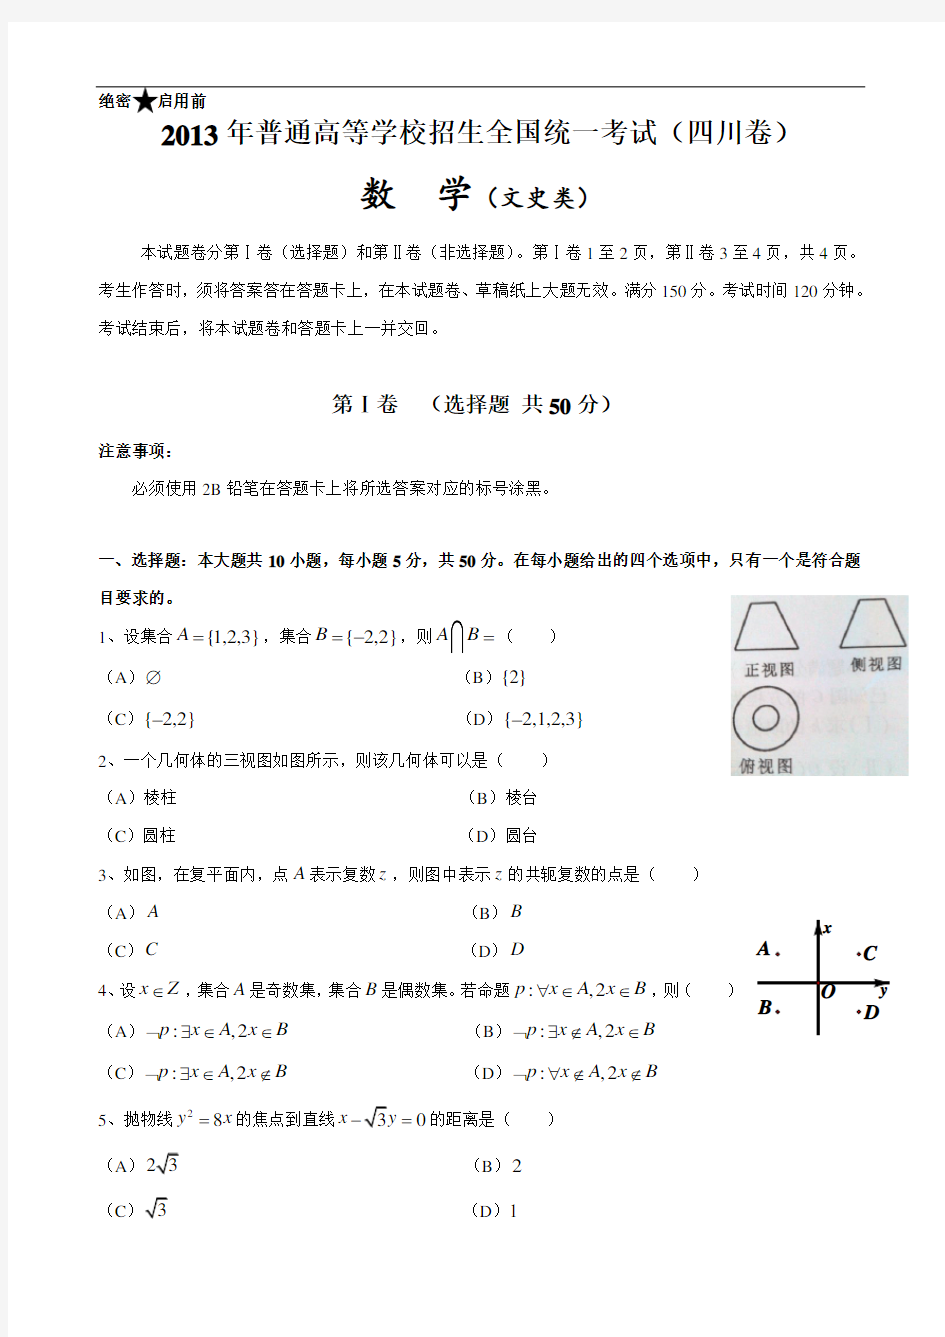 2013年高考真题——文科数学(四川卷)_解析版